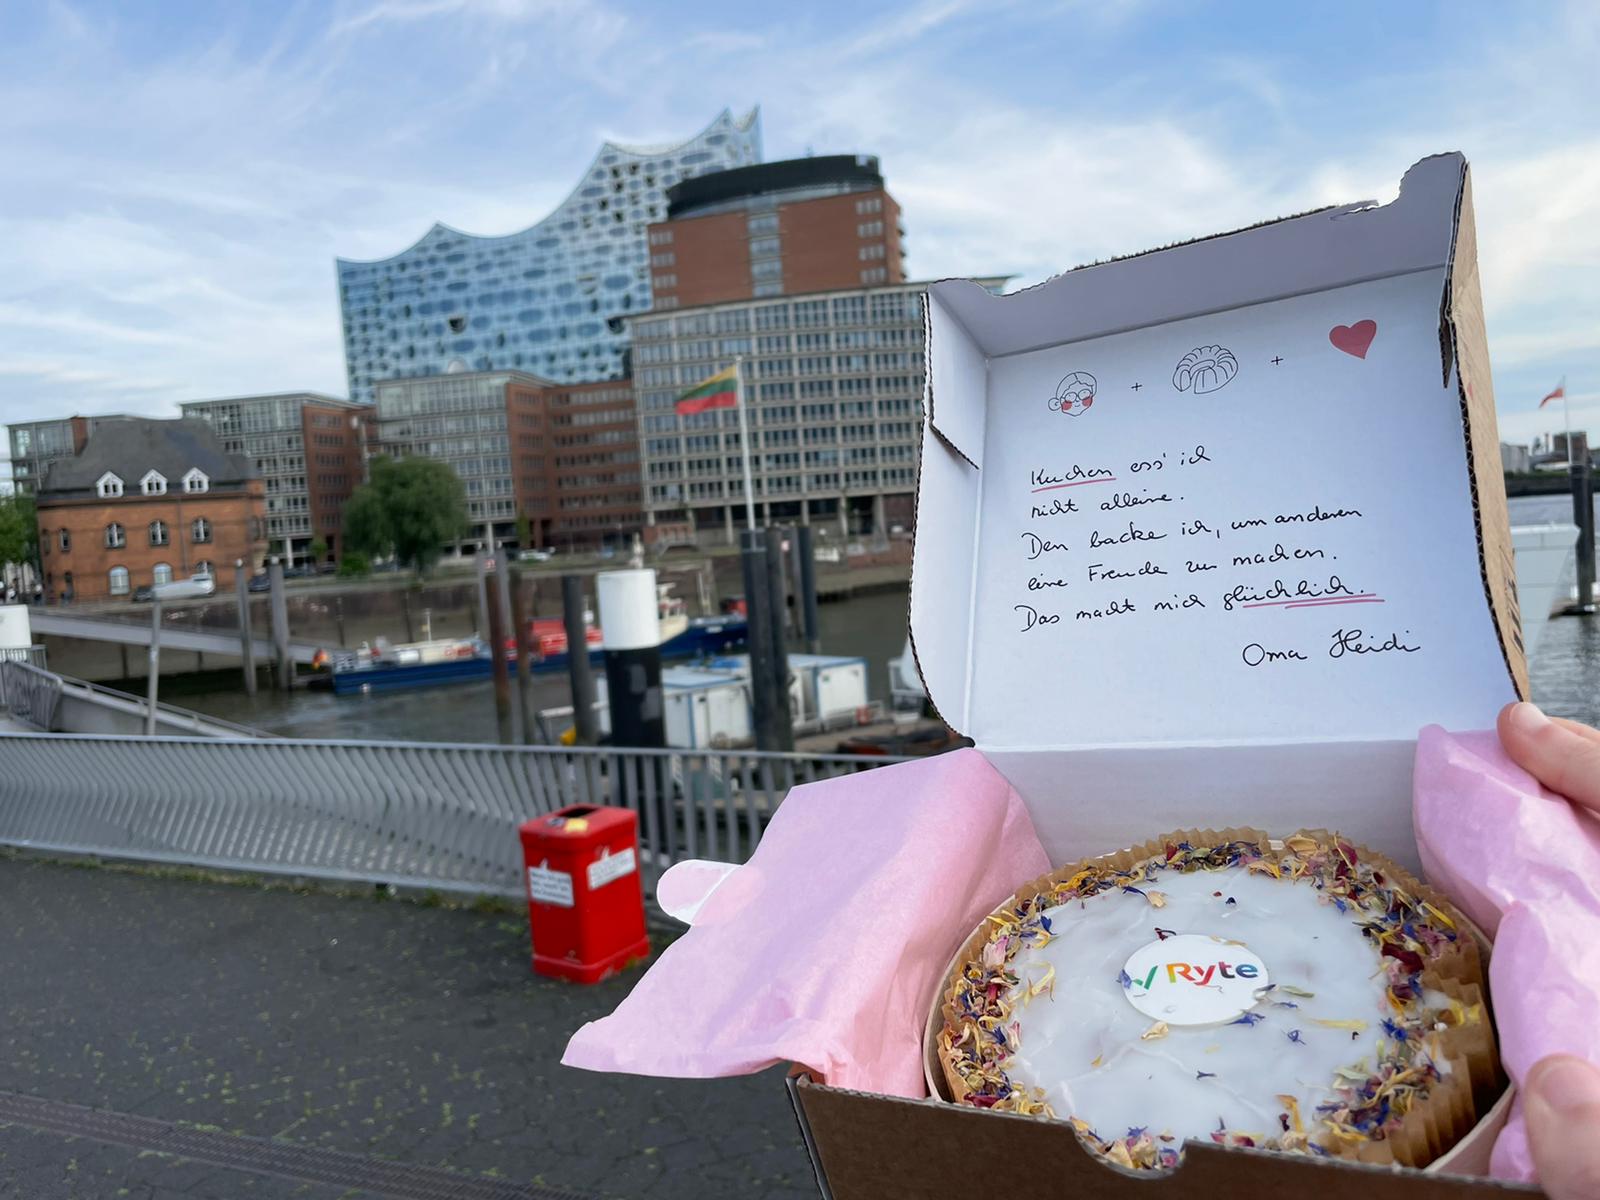 Kuchenbox mit Kuchen mit Ryte-Logo. Im Hintergrund sind Elbe und Elbphilharmonie zu sehen. Im Deckel der Box steht ein freundlicher Gruß von Oma Heidi.